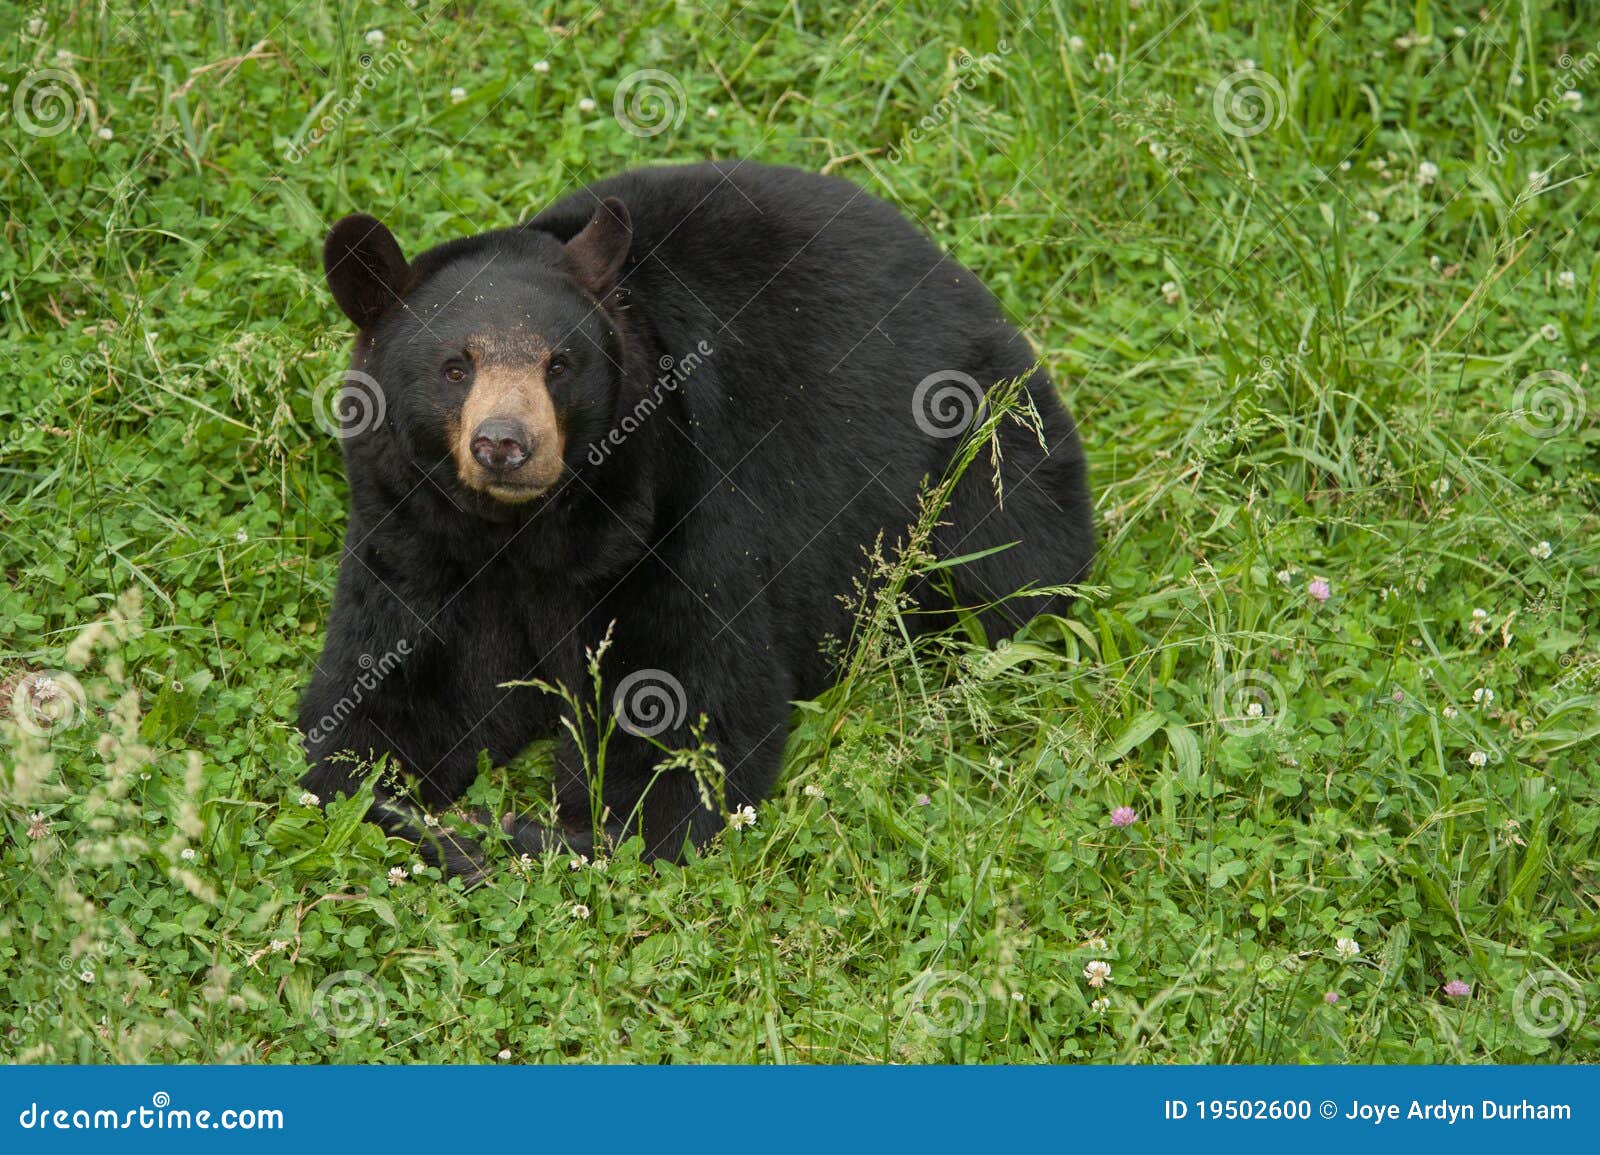 Urso preto (Ursus americano). Urso preto norte-americano (Ursus americano) em um prado com grama verde toda ao redor.